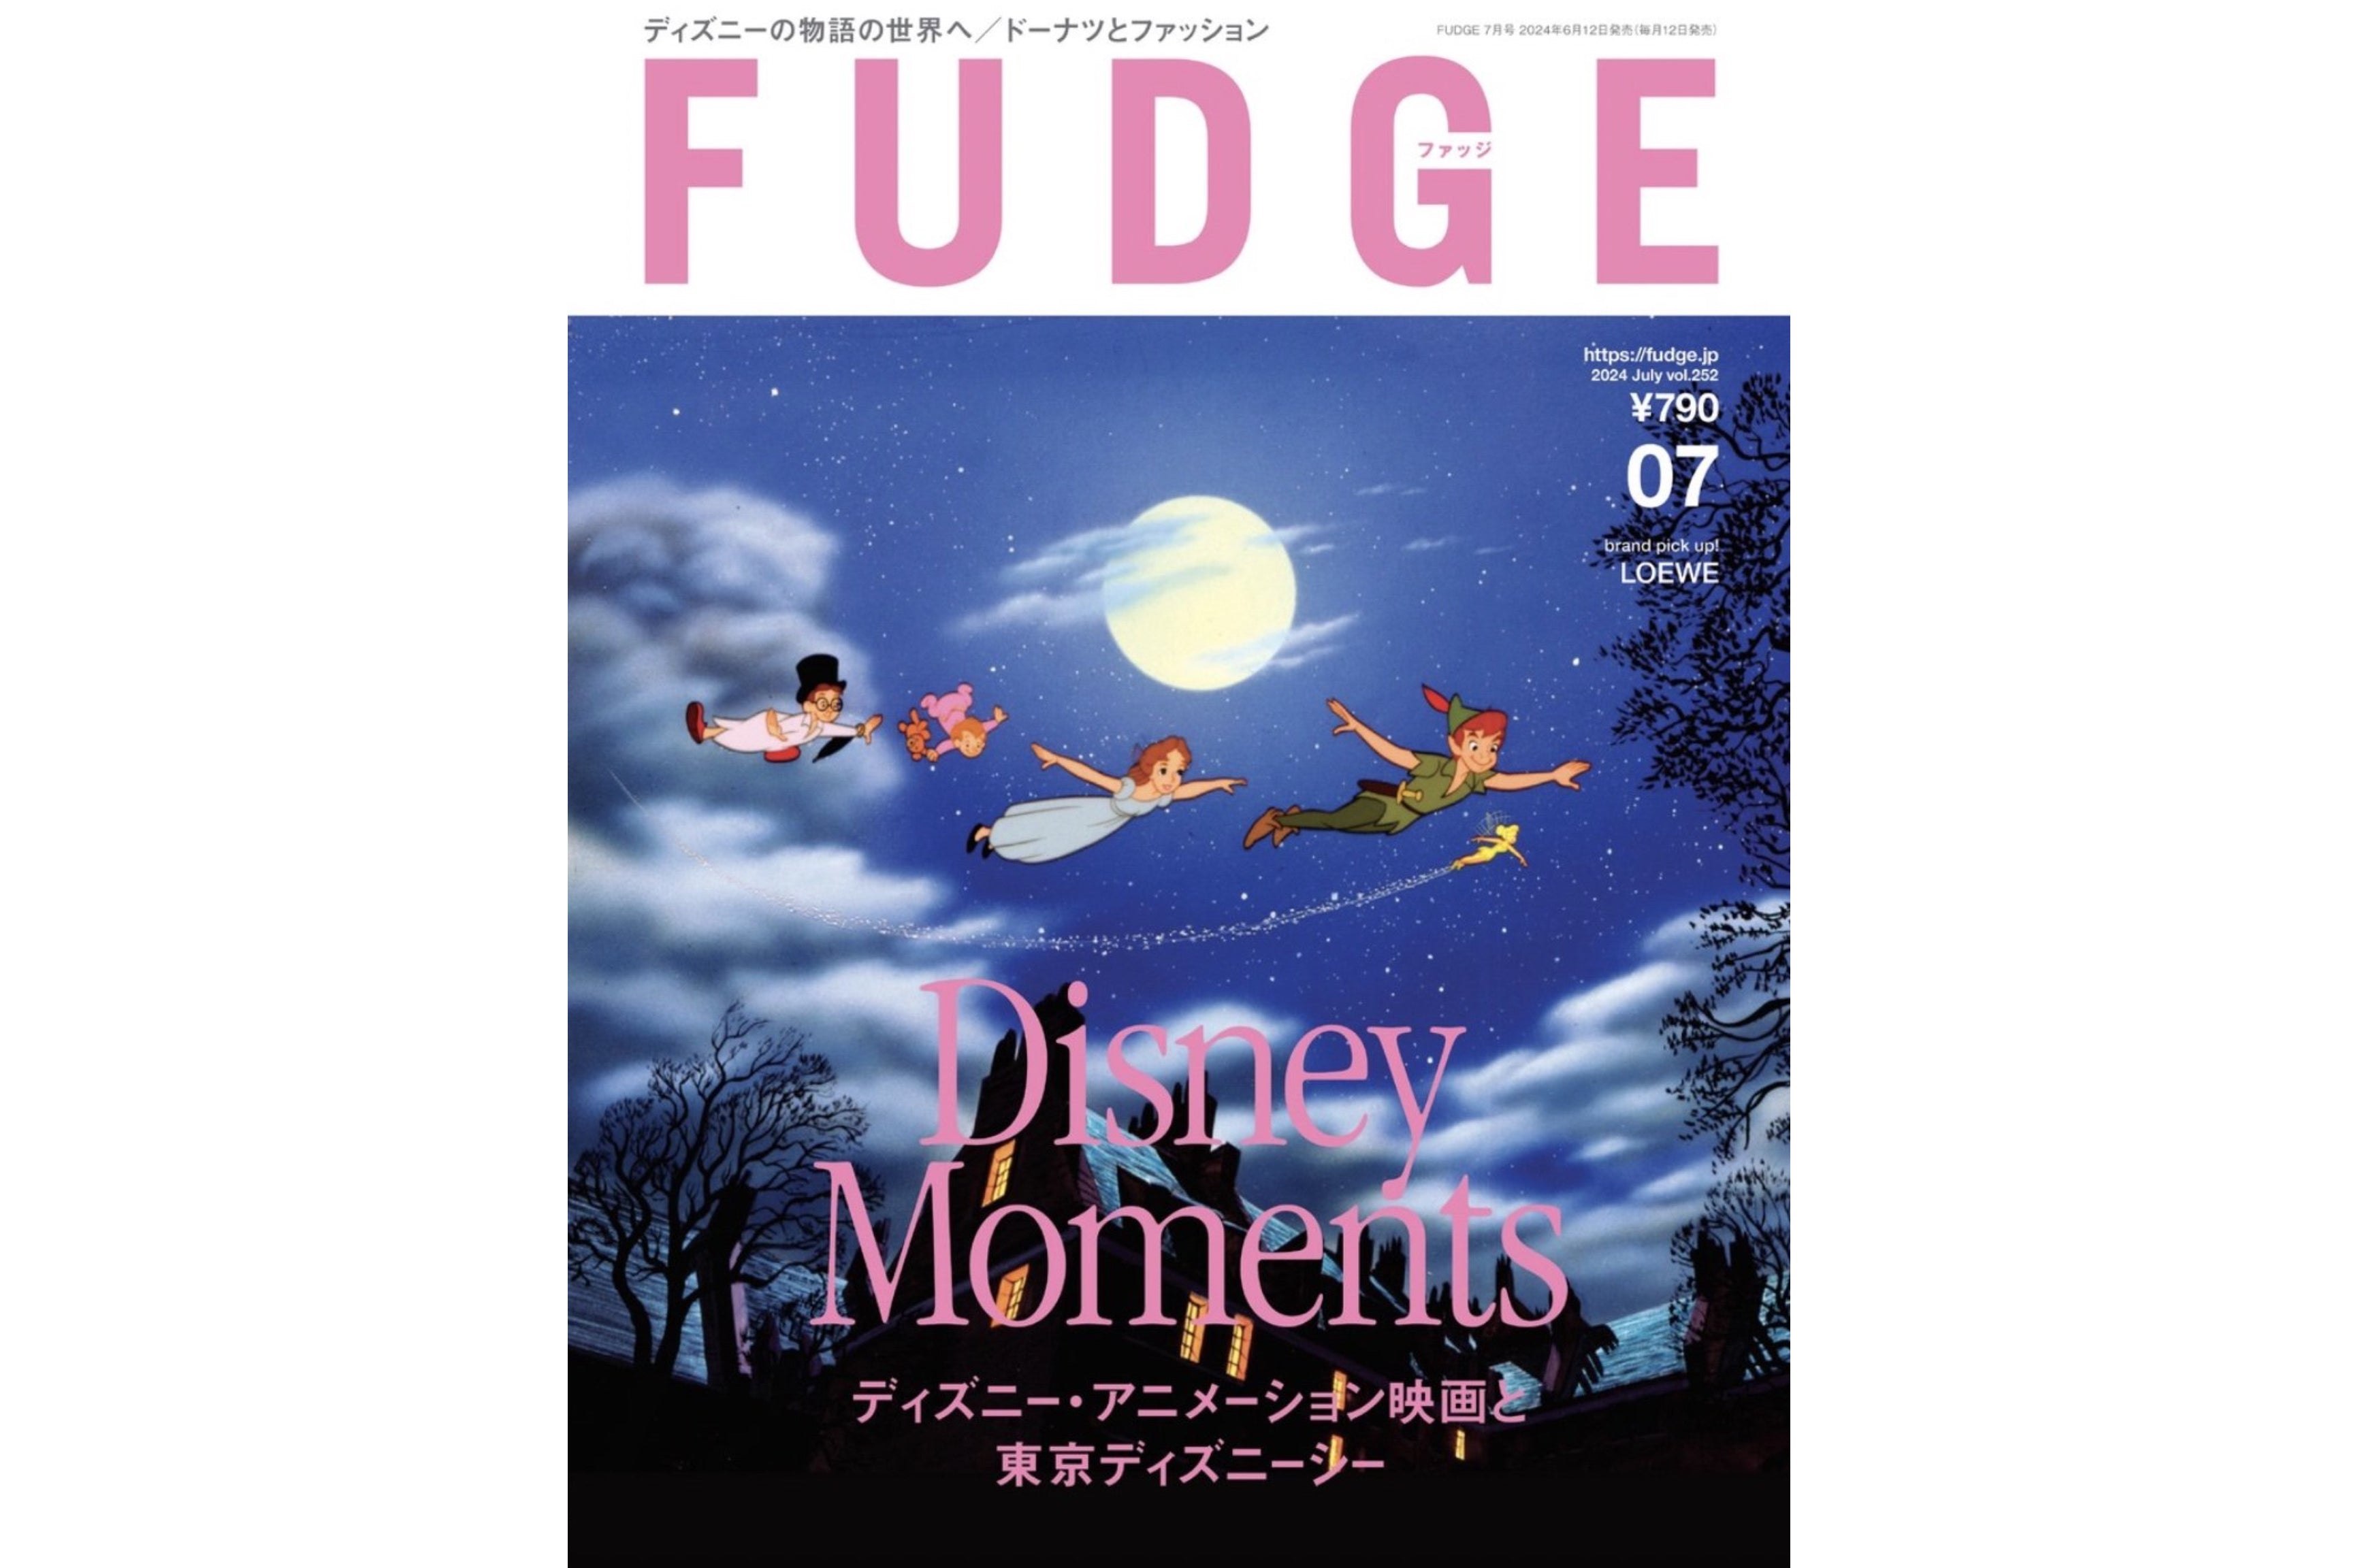 【媒体掲載】FUDGE 7月号 6/12(水)発売